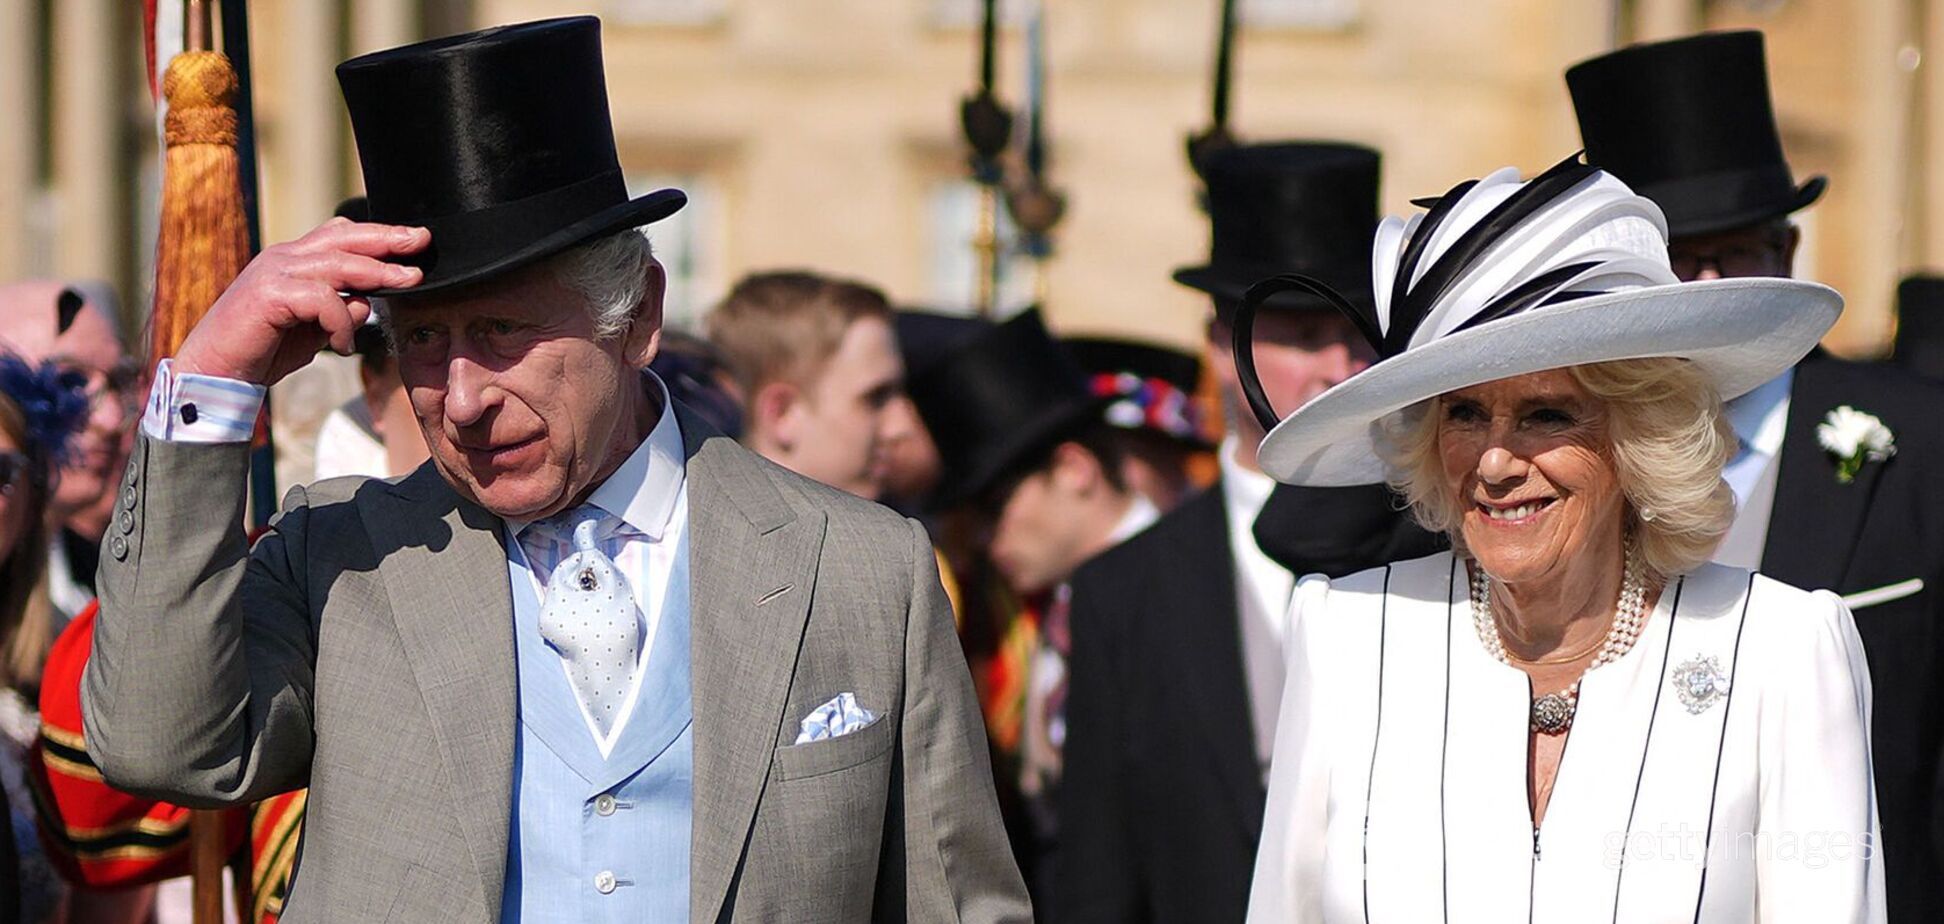 Опирался на зонтик: король Чарльз III появился на публике с женой, спрятав голову в высоком цилиндре. Фото